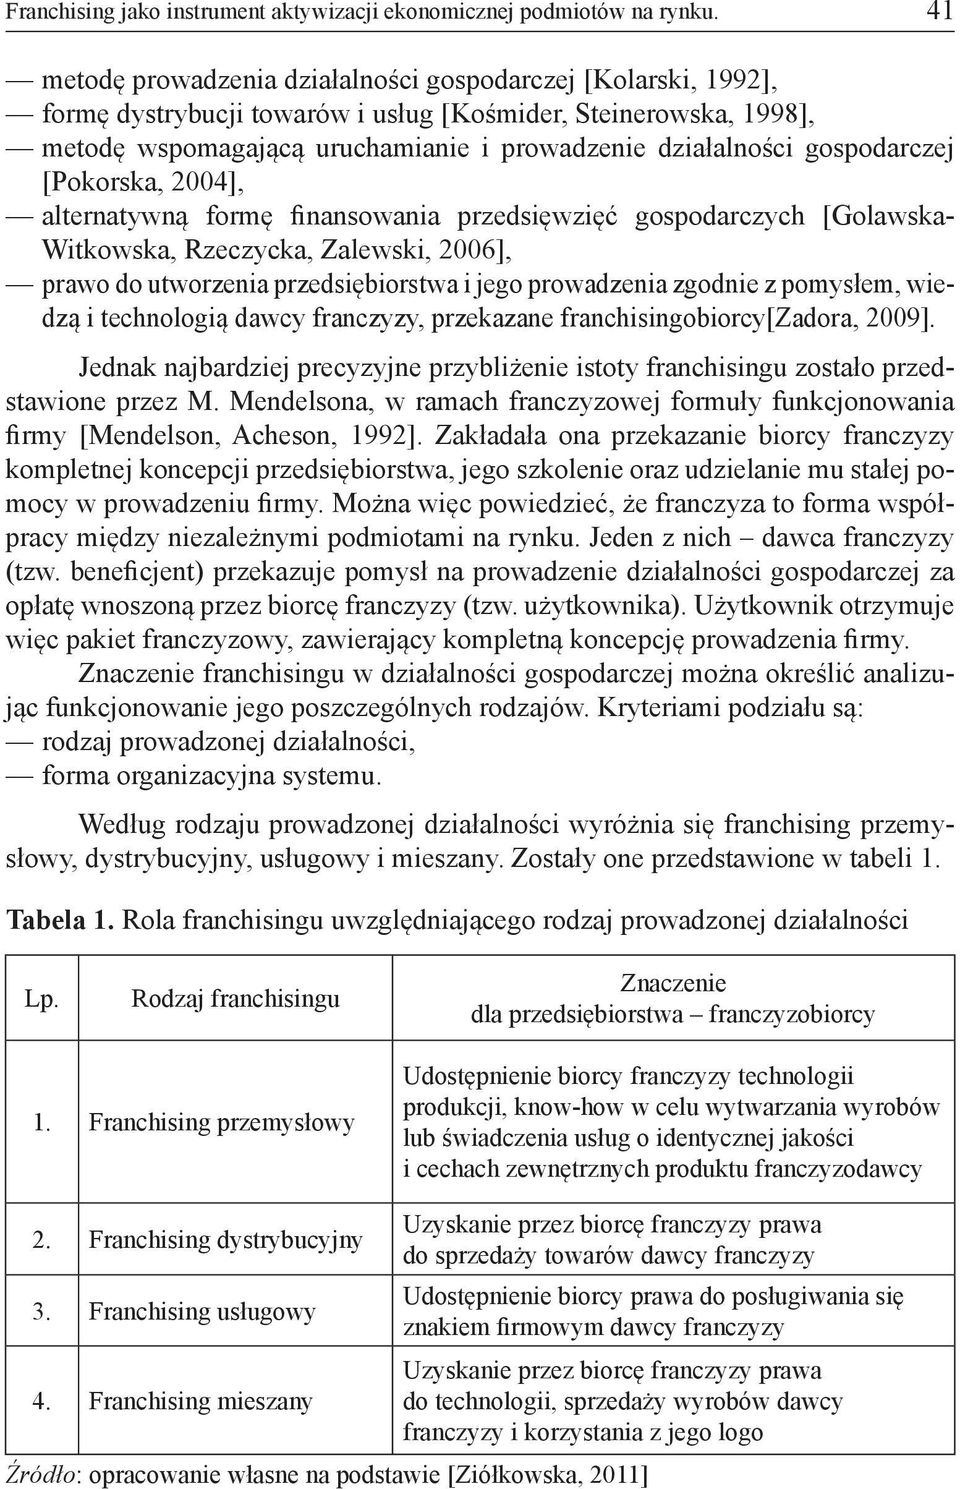 gospodarczej [Pokorska, 2004], alternatywną formę finansowania przedsięwzięć gospodarczych [Golawska- Witkowska, Rzeczycka, Zalewski, 2006], prawo do utworzenia przedsiębiorstwa i jego prowadzenia